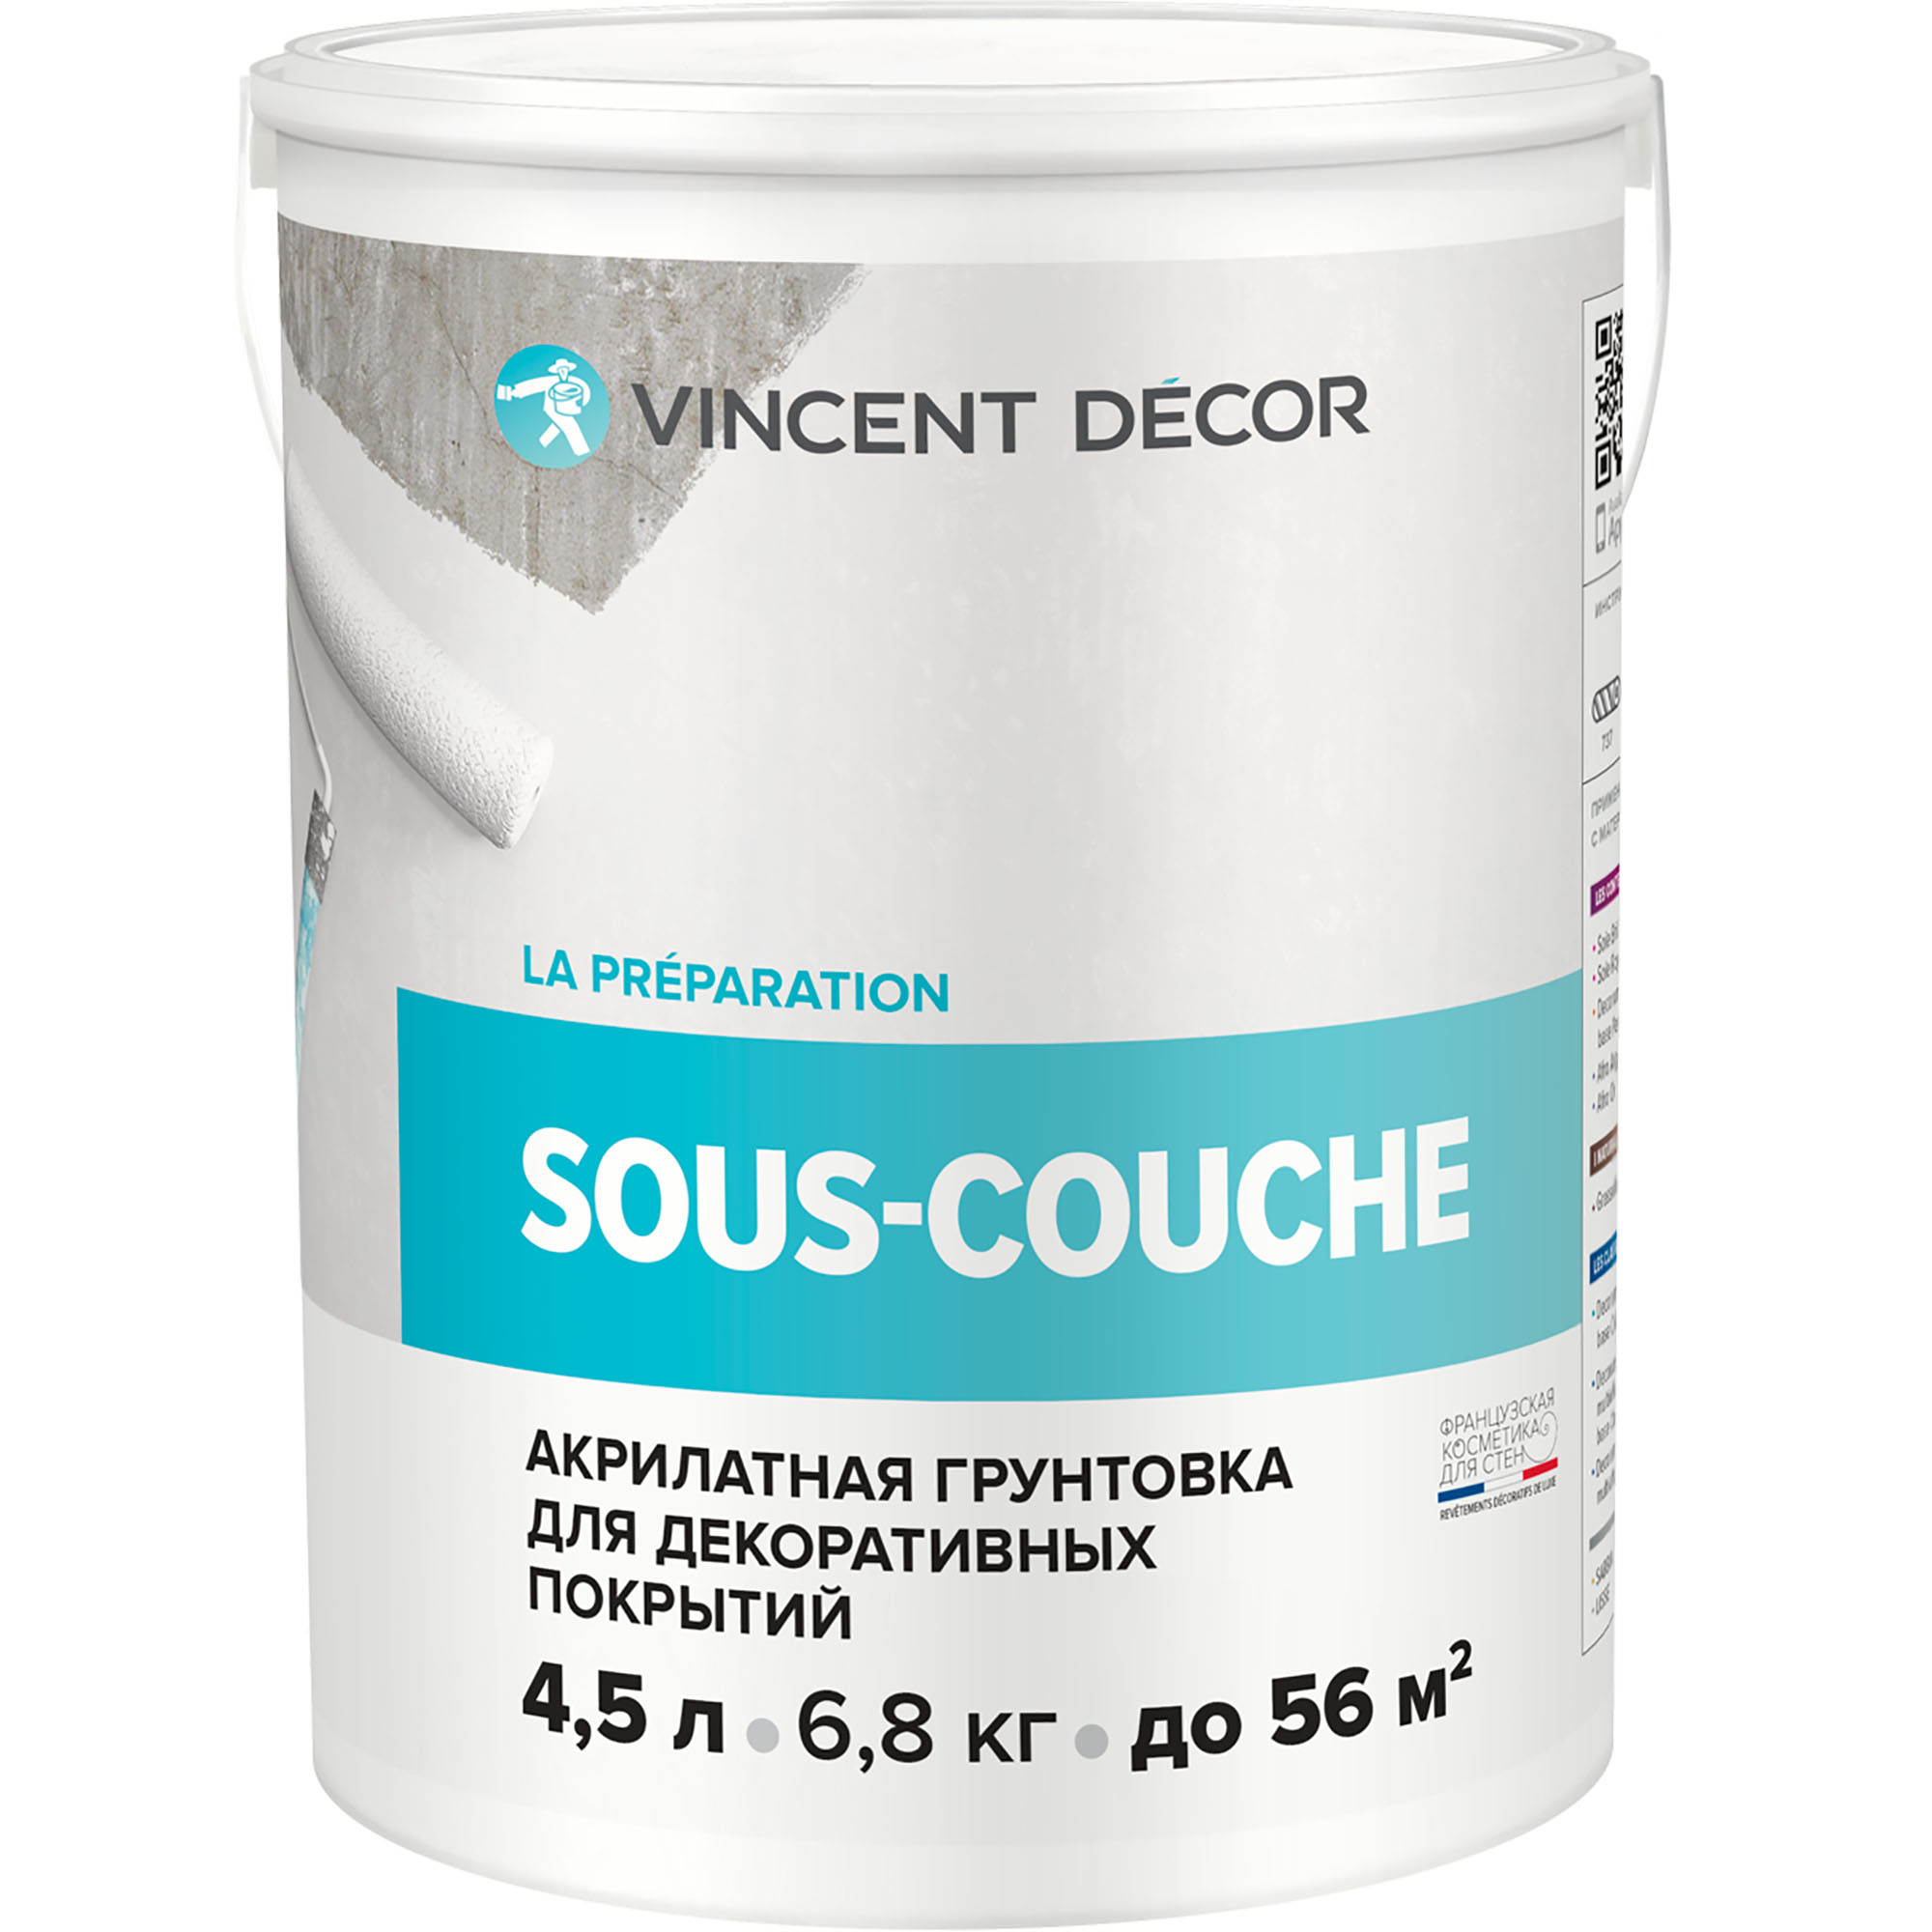 Грунтовка для декоративных покрытий Vincent Decor Sous-couche 4,5 л